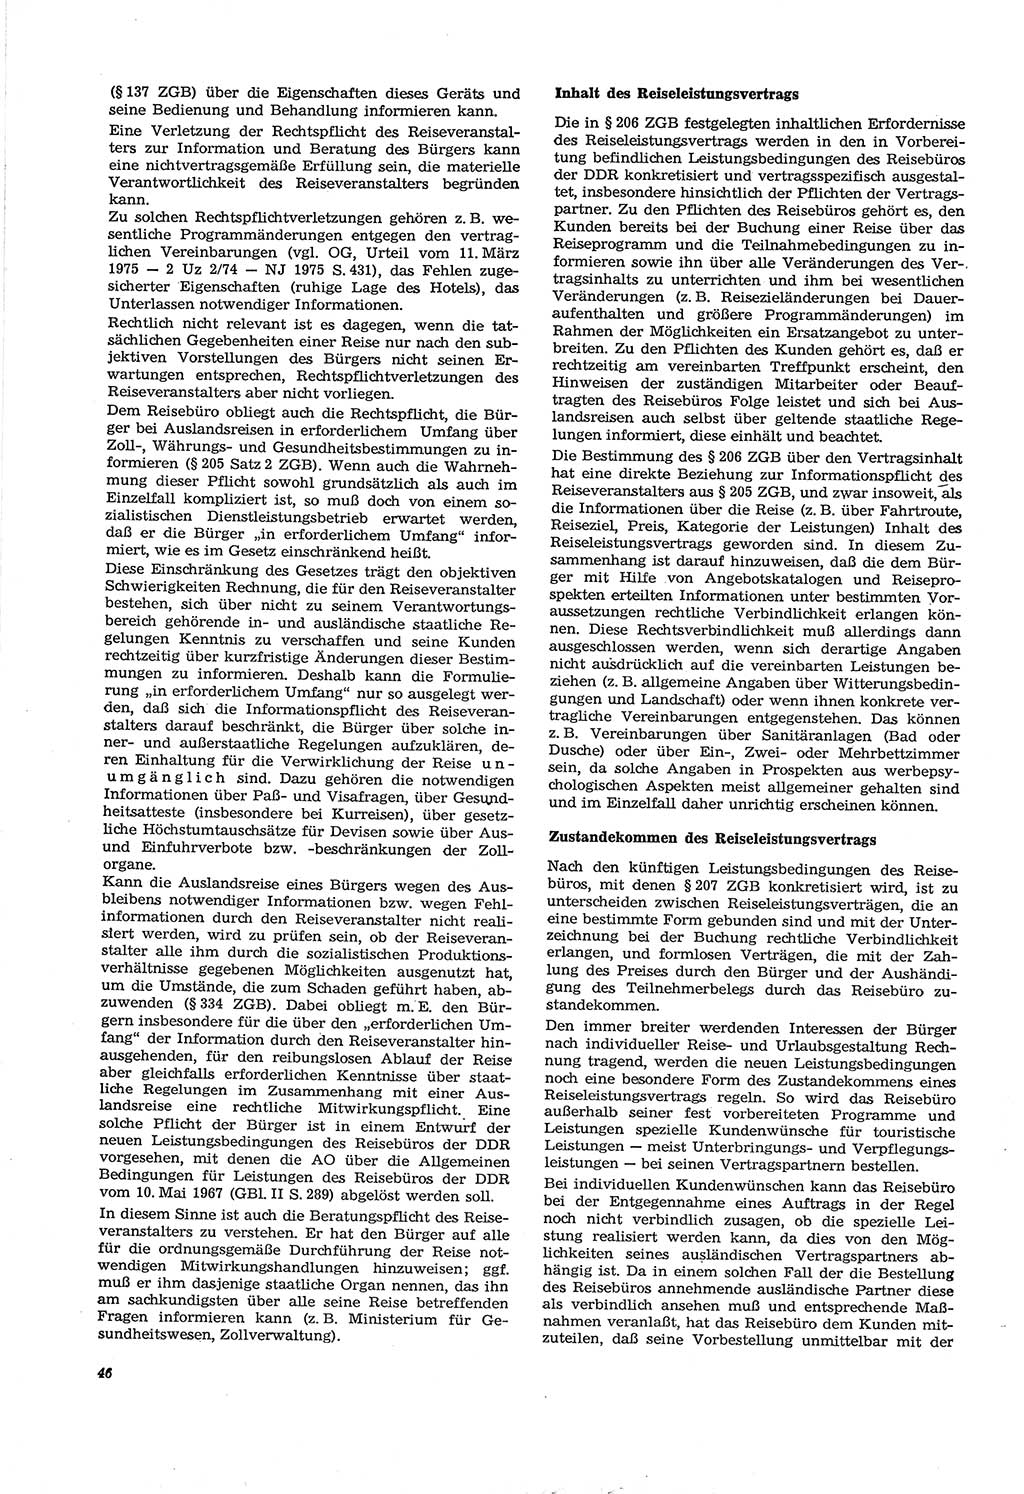 Neue Justiz (NJ), Zeitschrift für Recht und Rechtswissenschaft [Deutsche Demokratische Republik (DDR)], 30. Jahrgang 1976, Seite 46 (NJ DDR 1976, S. 46)